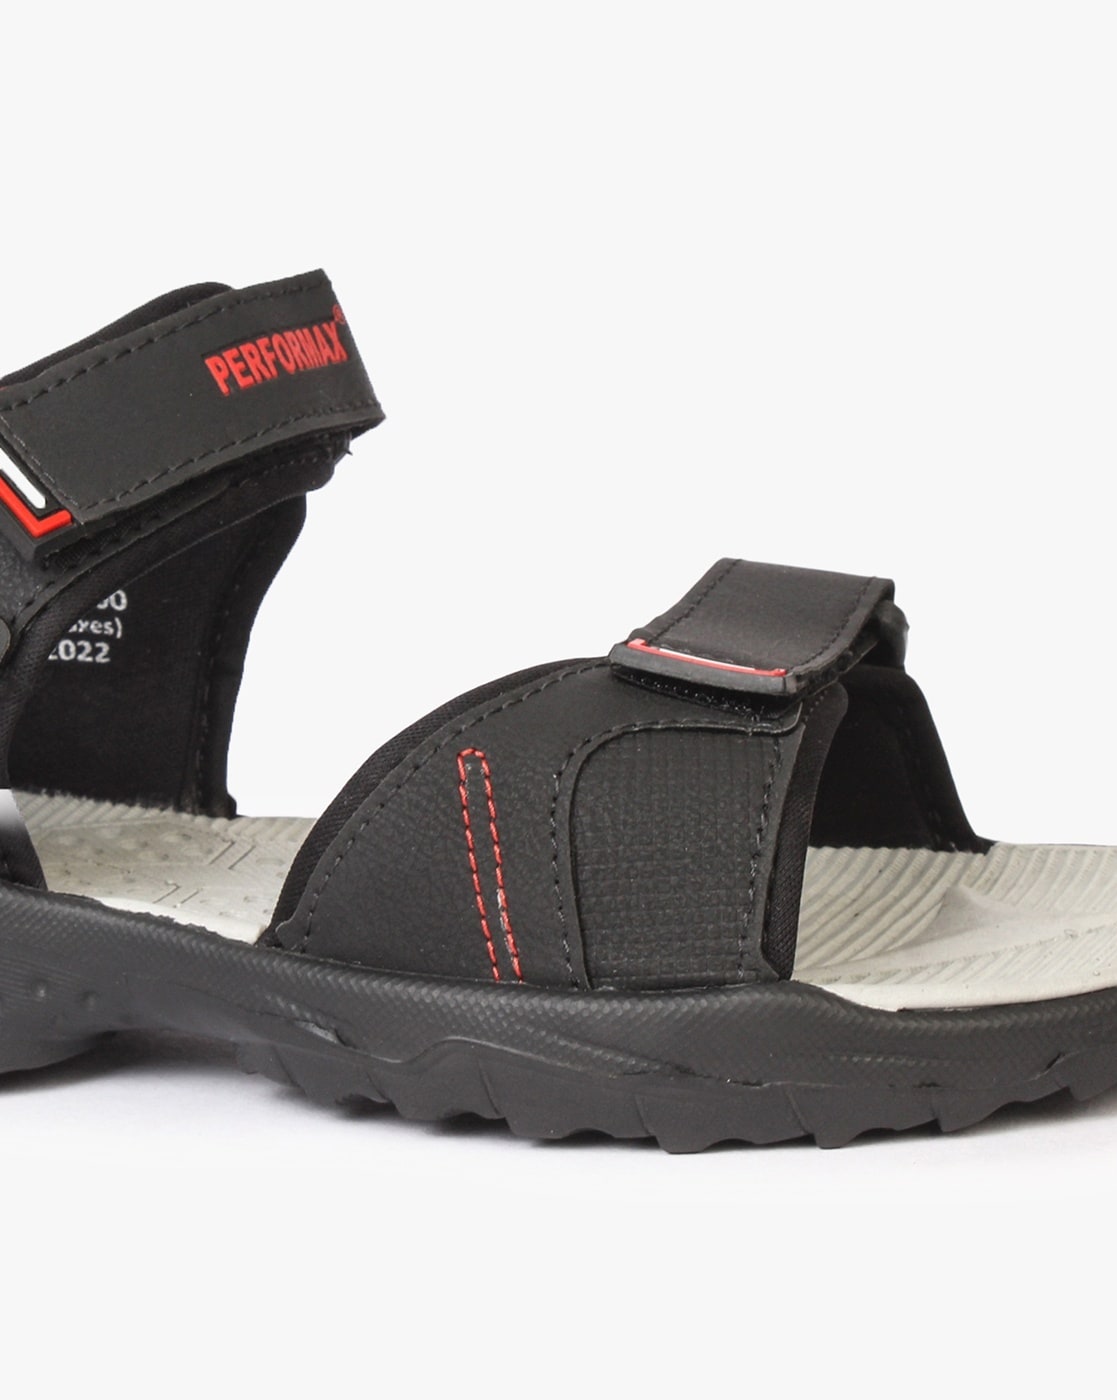 Buy Sandals for men SS 580 - Sandals Slippers for Men | Relaxo